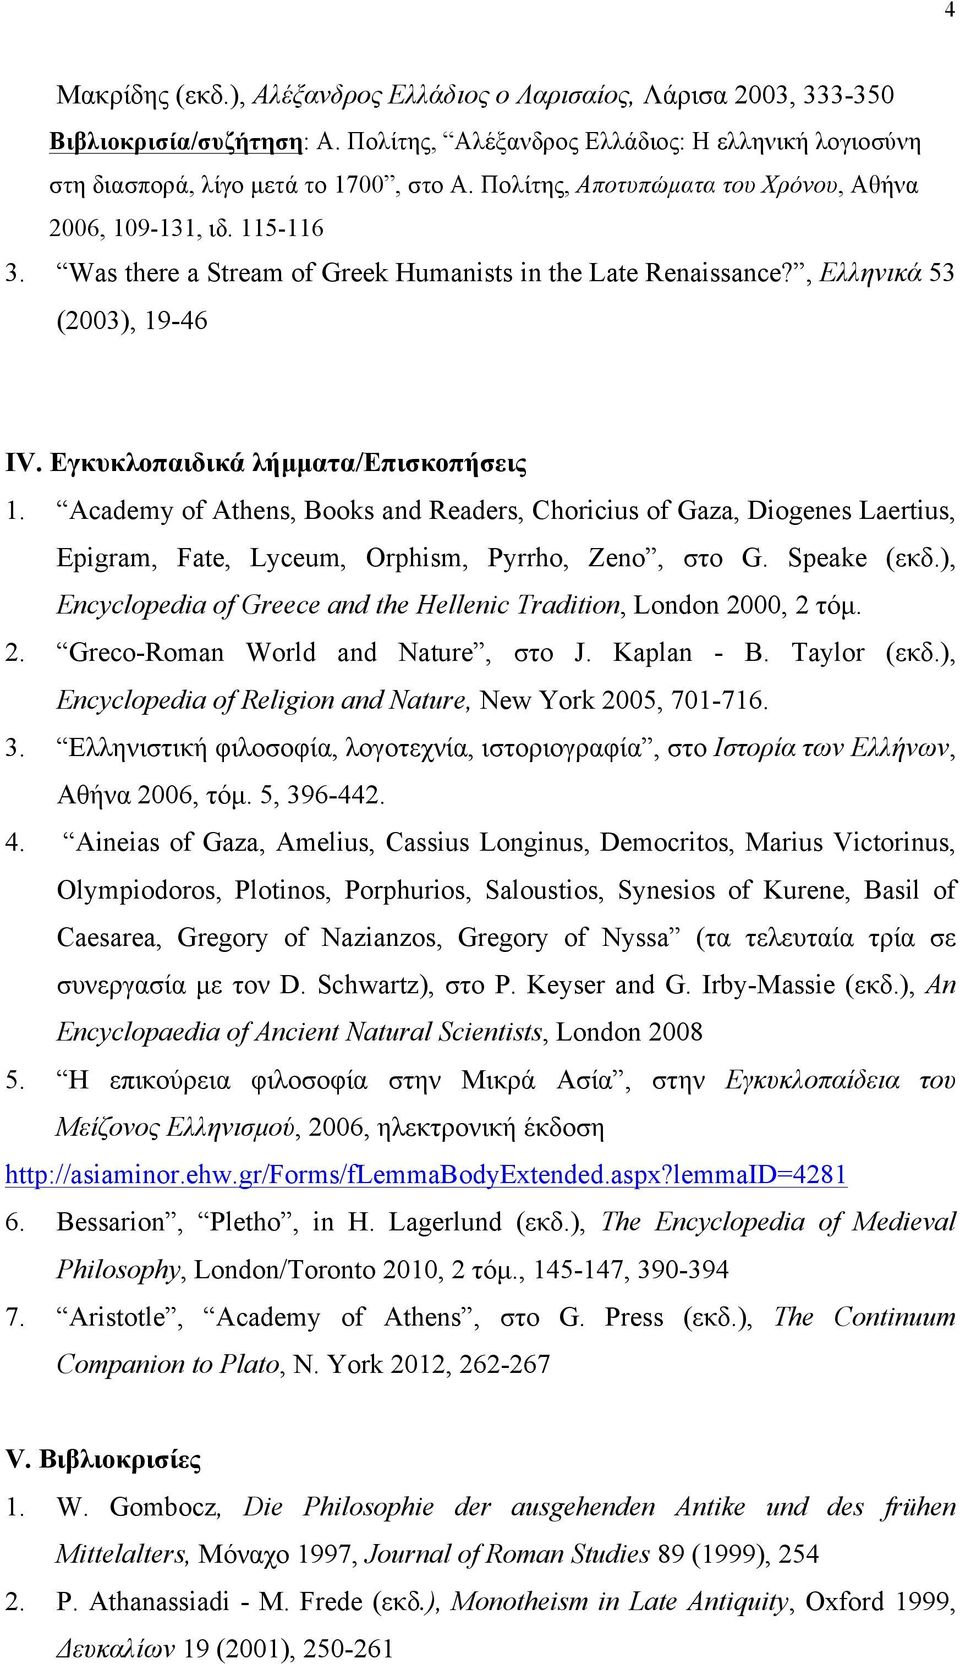 Εγκυκλοπαιδικά λήµµατα/eπισκοπήσεις 1. Academy of Athens, Books and Readers, Choricius of Gaza, Diogenes Laertius, Epigram, Fate, Lyceum, Orphism, Pyrrho, Zeno, στο G. Speake (εκδ.